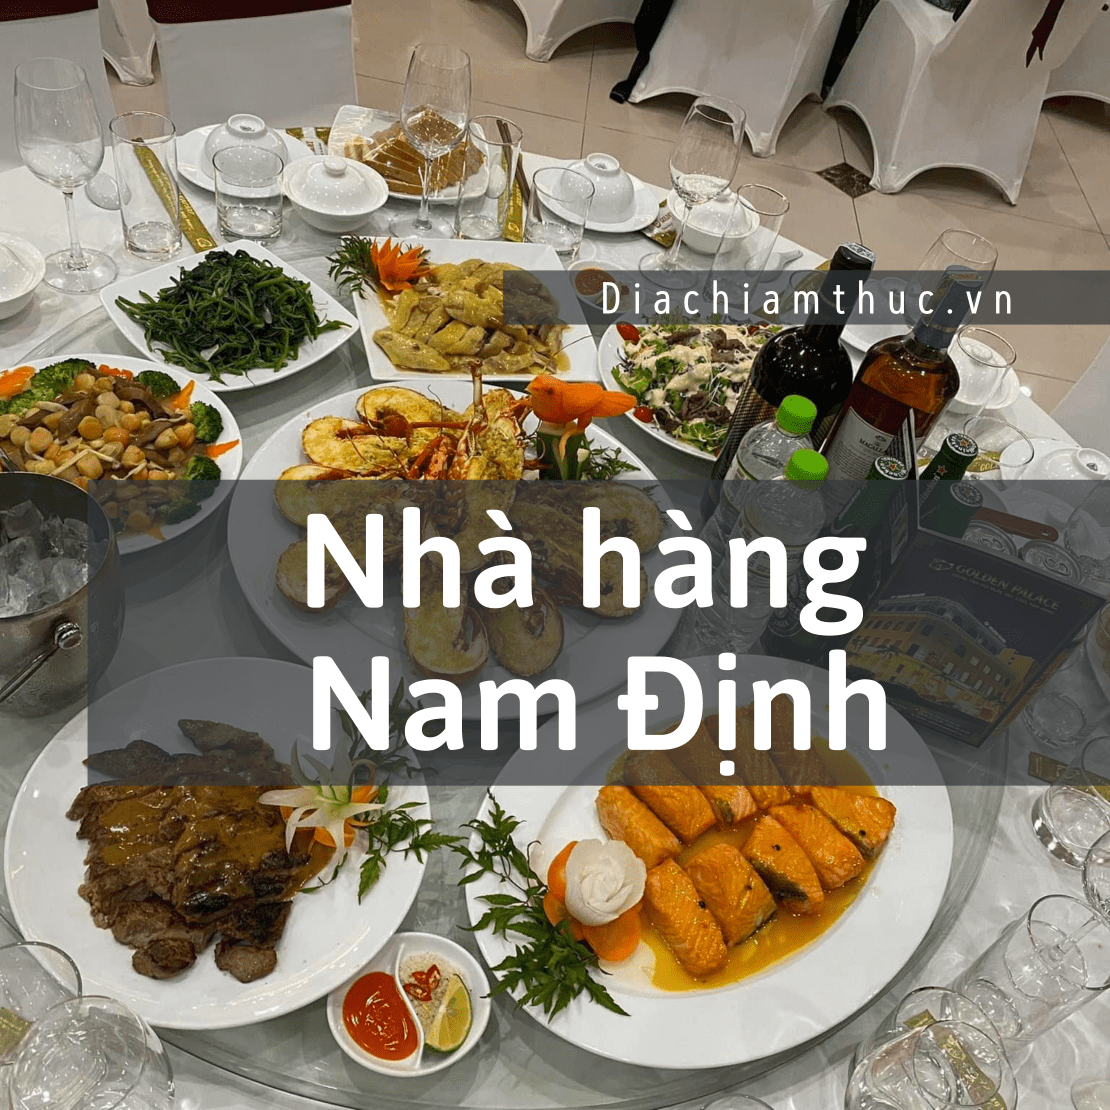 Nhà hàng Nam Định